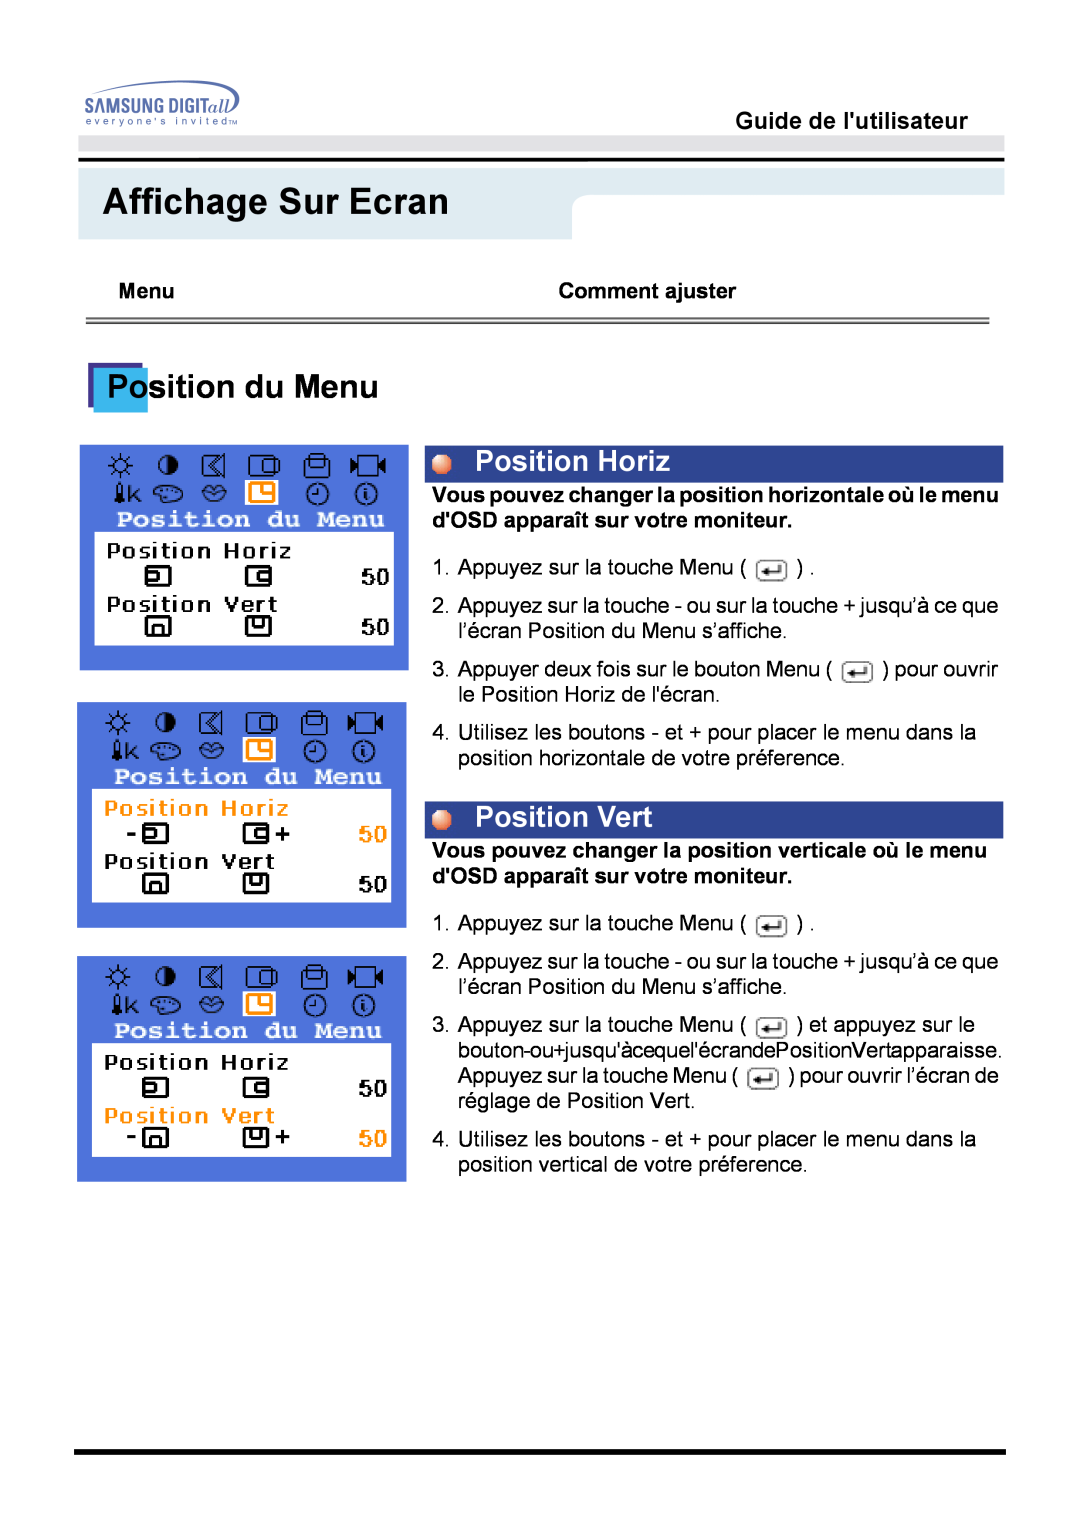 Samsung GH15MSSN/EDC manual Position du Menu, Affichage Sur Ecran, Position Horiz, Position Vert, Guide de lutilisateur 